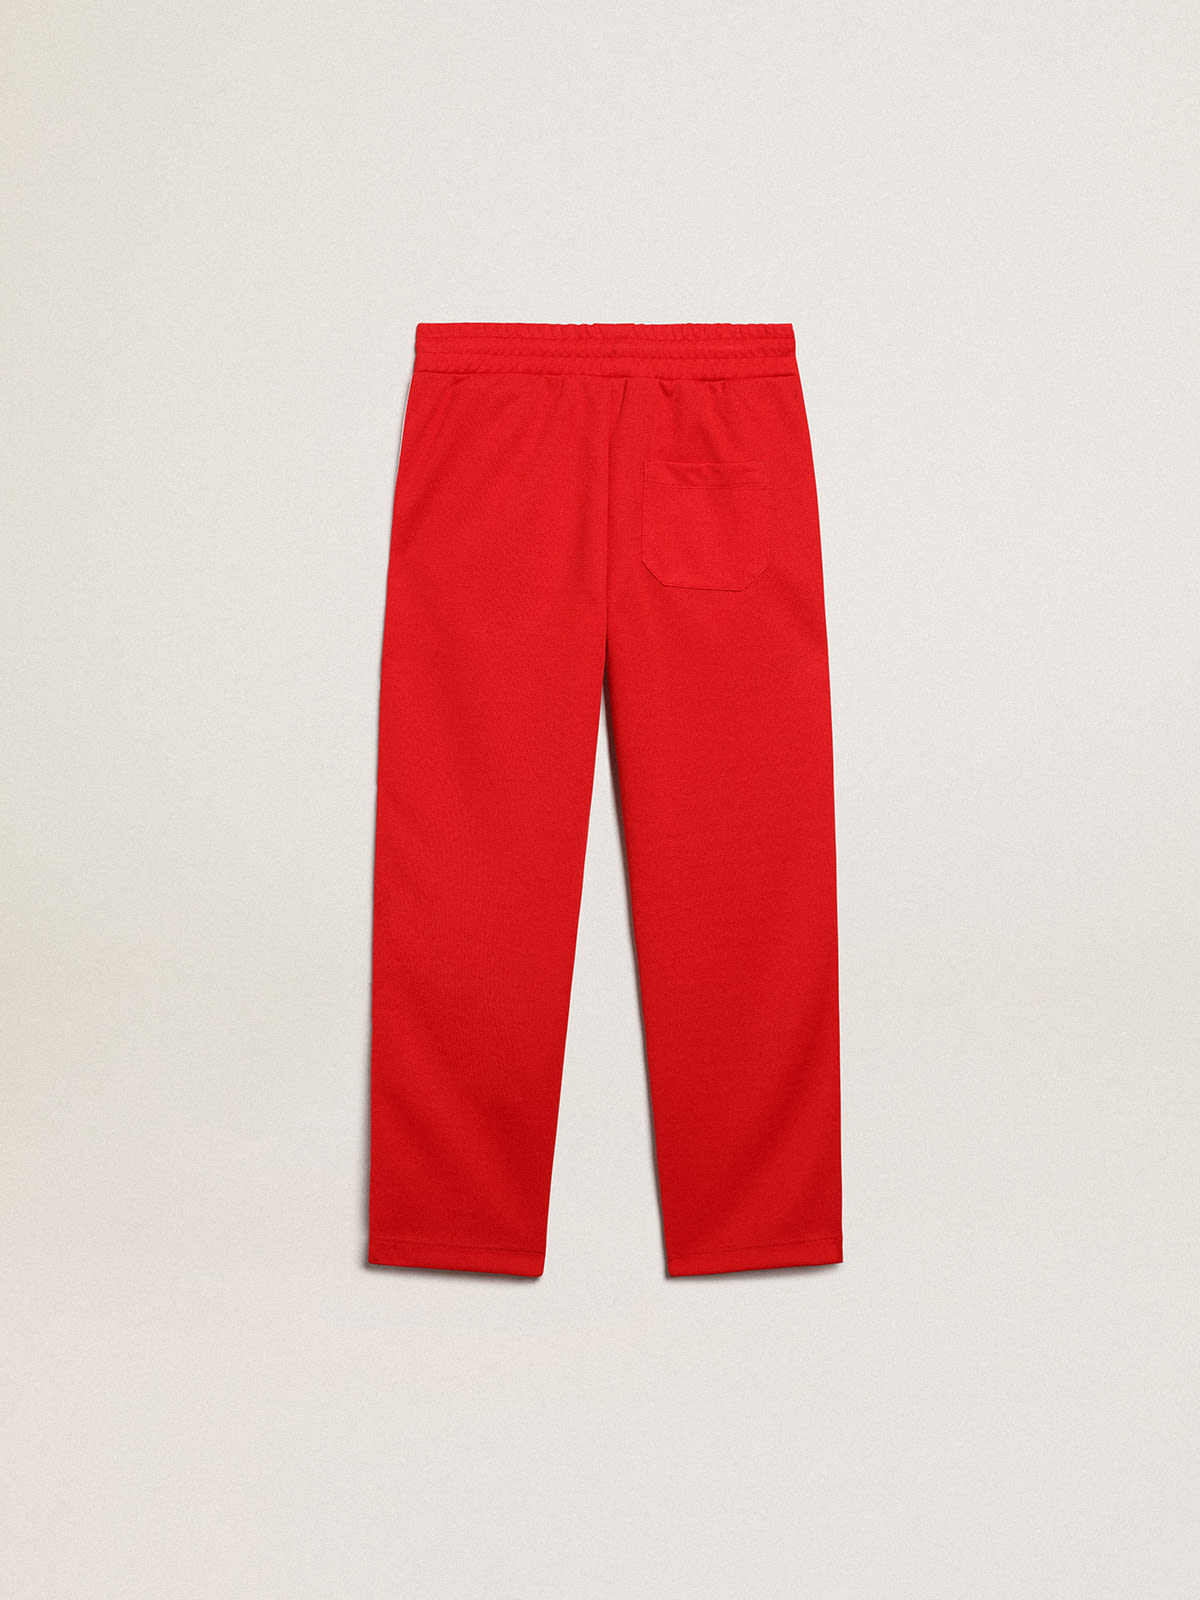 Golden Goose - Pantalone jogging kids di colore rosso con stelle sui lati in 